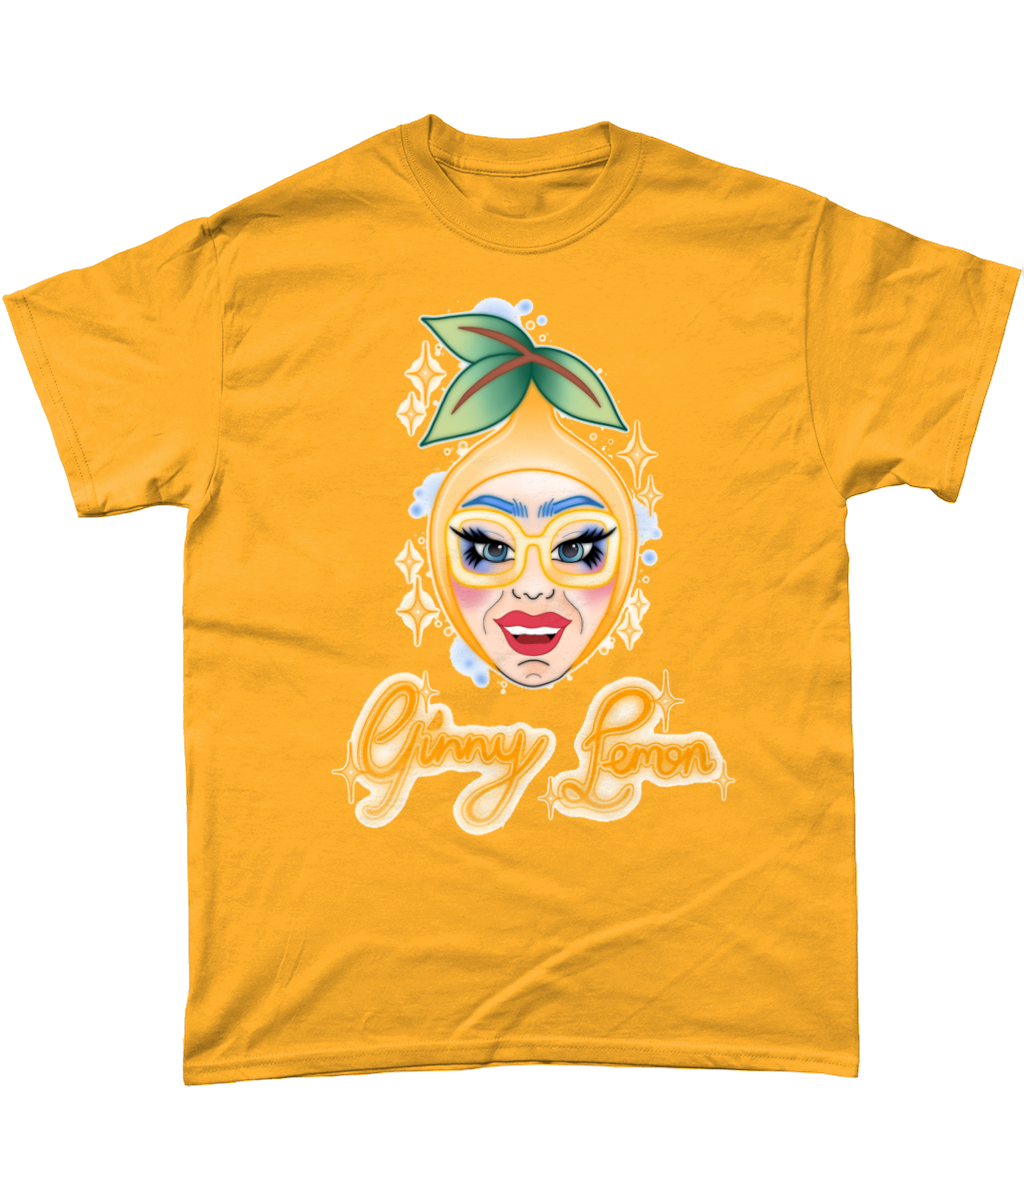 Ginny Lemon - Lemon Head T-shirt